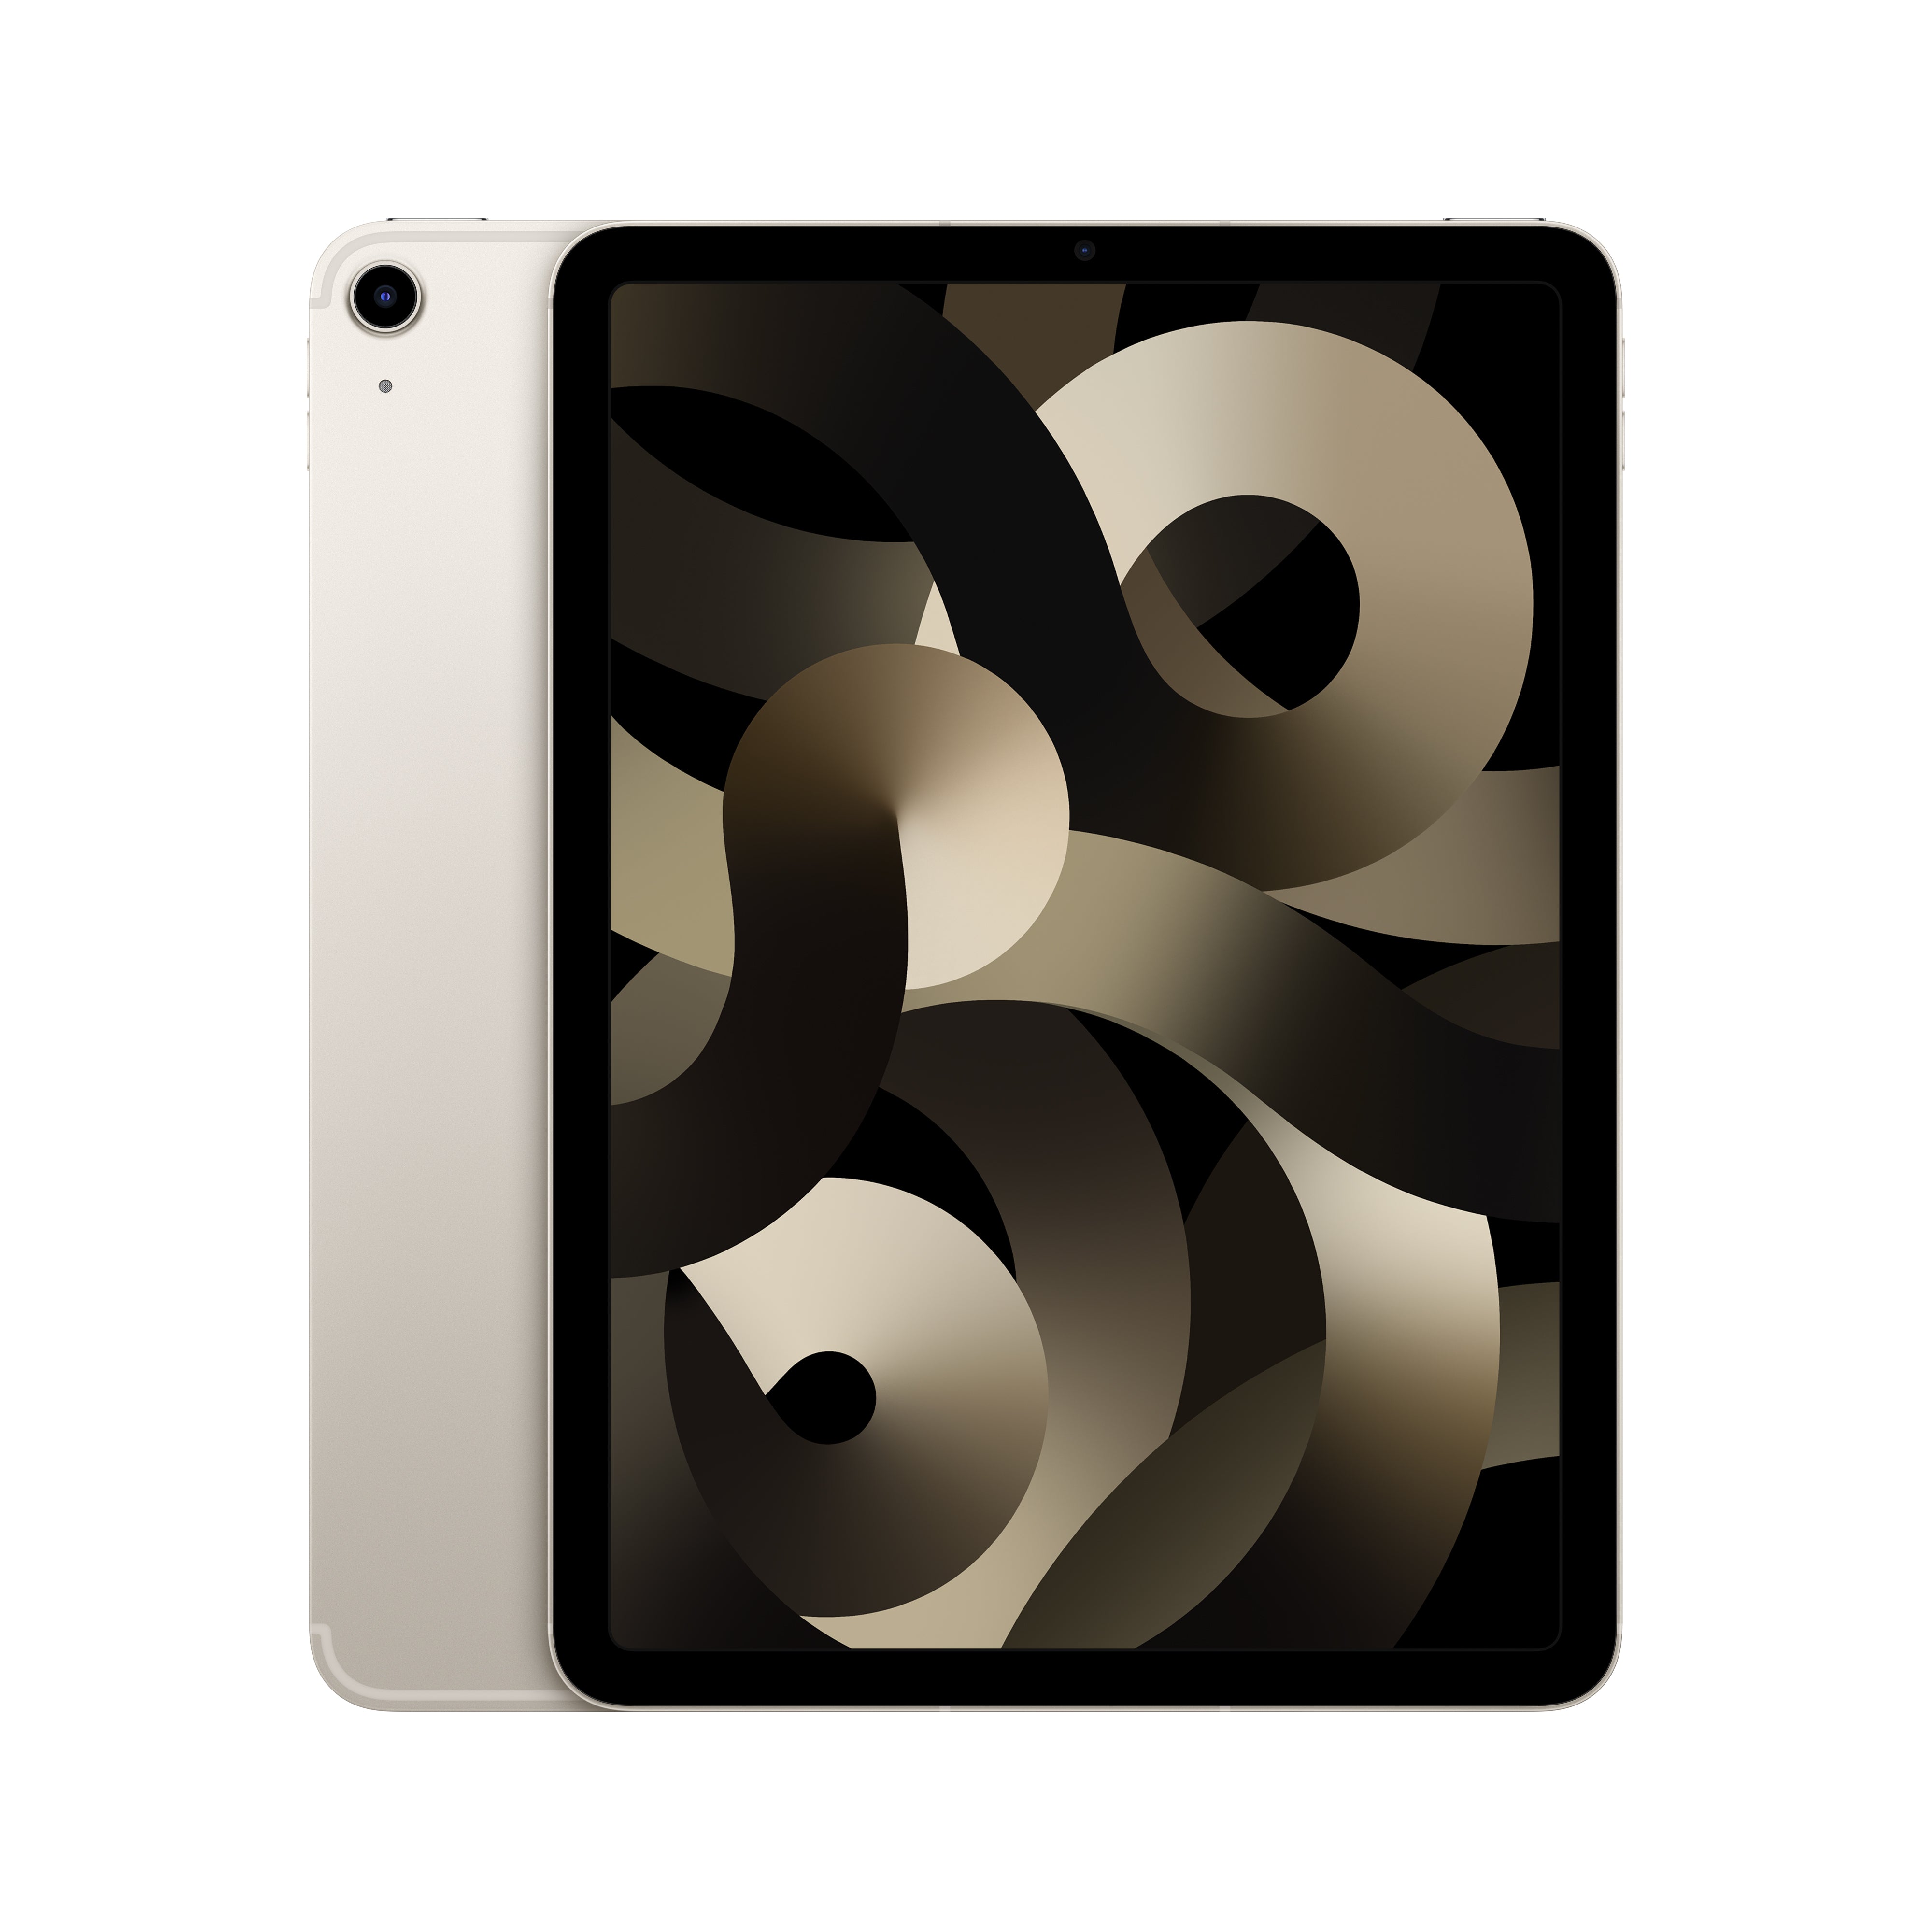 iPad Air 5th Generation WiFi 64GB - Starlight